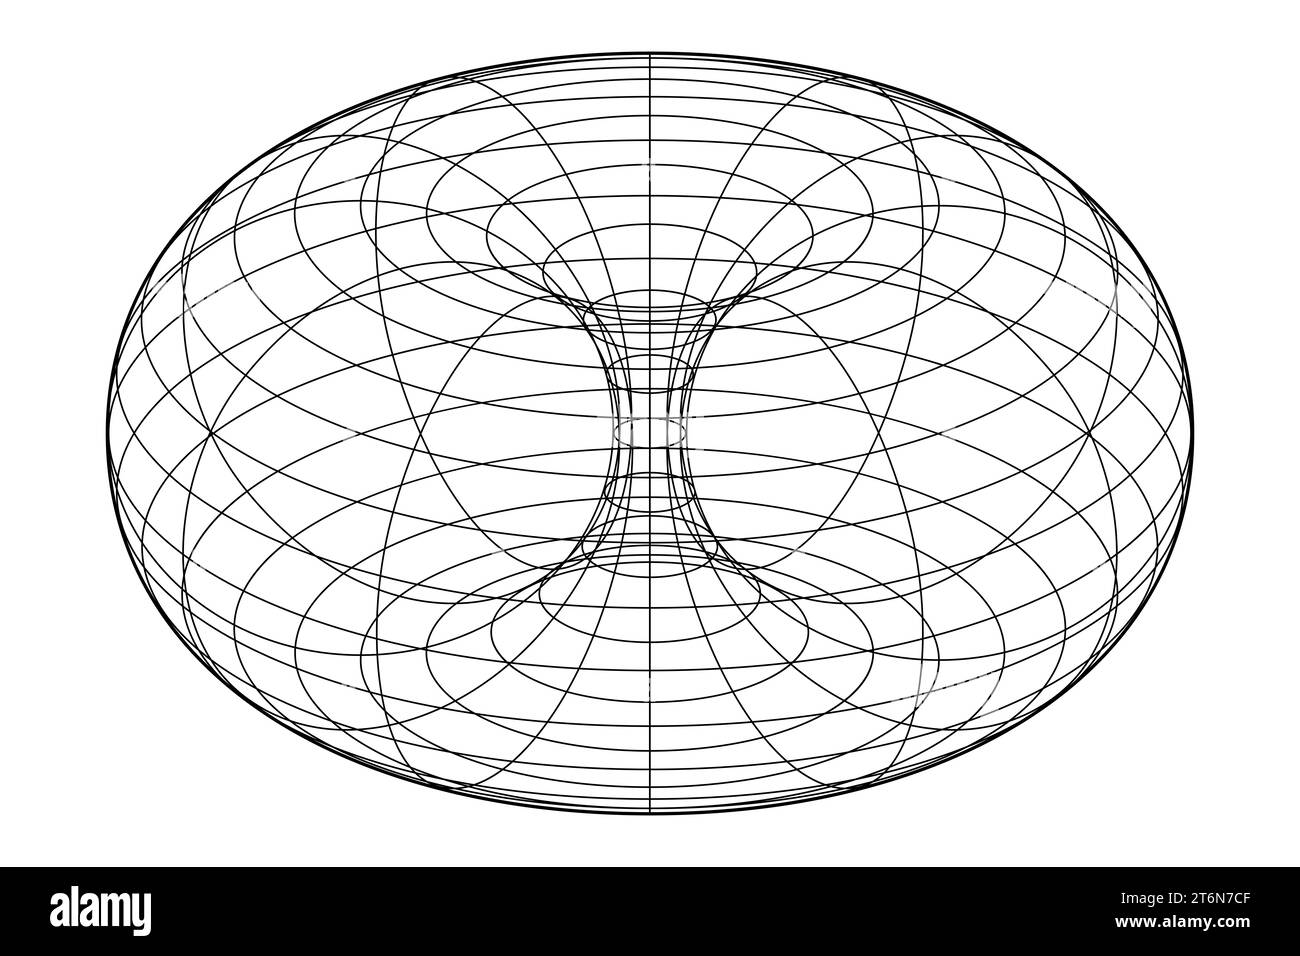 Telaio in filo metallico di un torace ad anello, anche ciambella o ciambella. In geometria, una superficie di rivoluzione generata ruotando un cerchio nello spazio 3D. Foto Stock